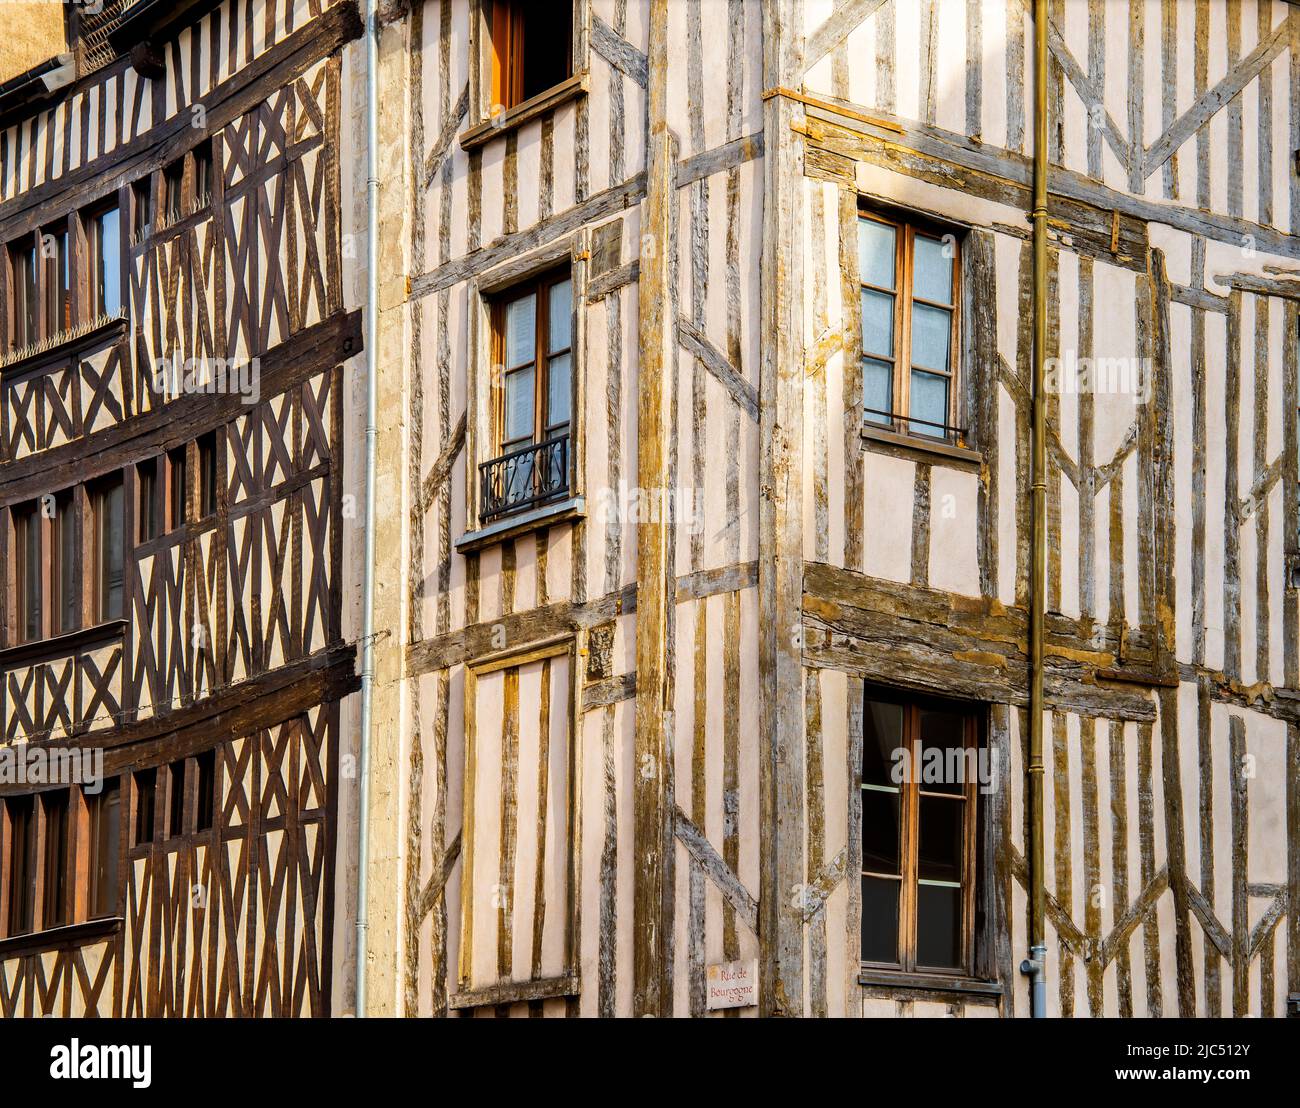 Rue de Bourgogne, traditional houses, Orleans old town, Centre-Val de Loire region; France. Stock Photo